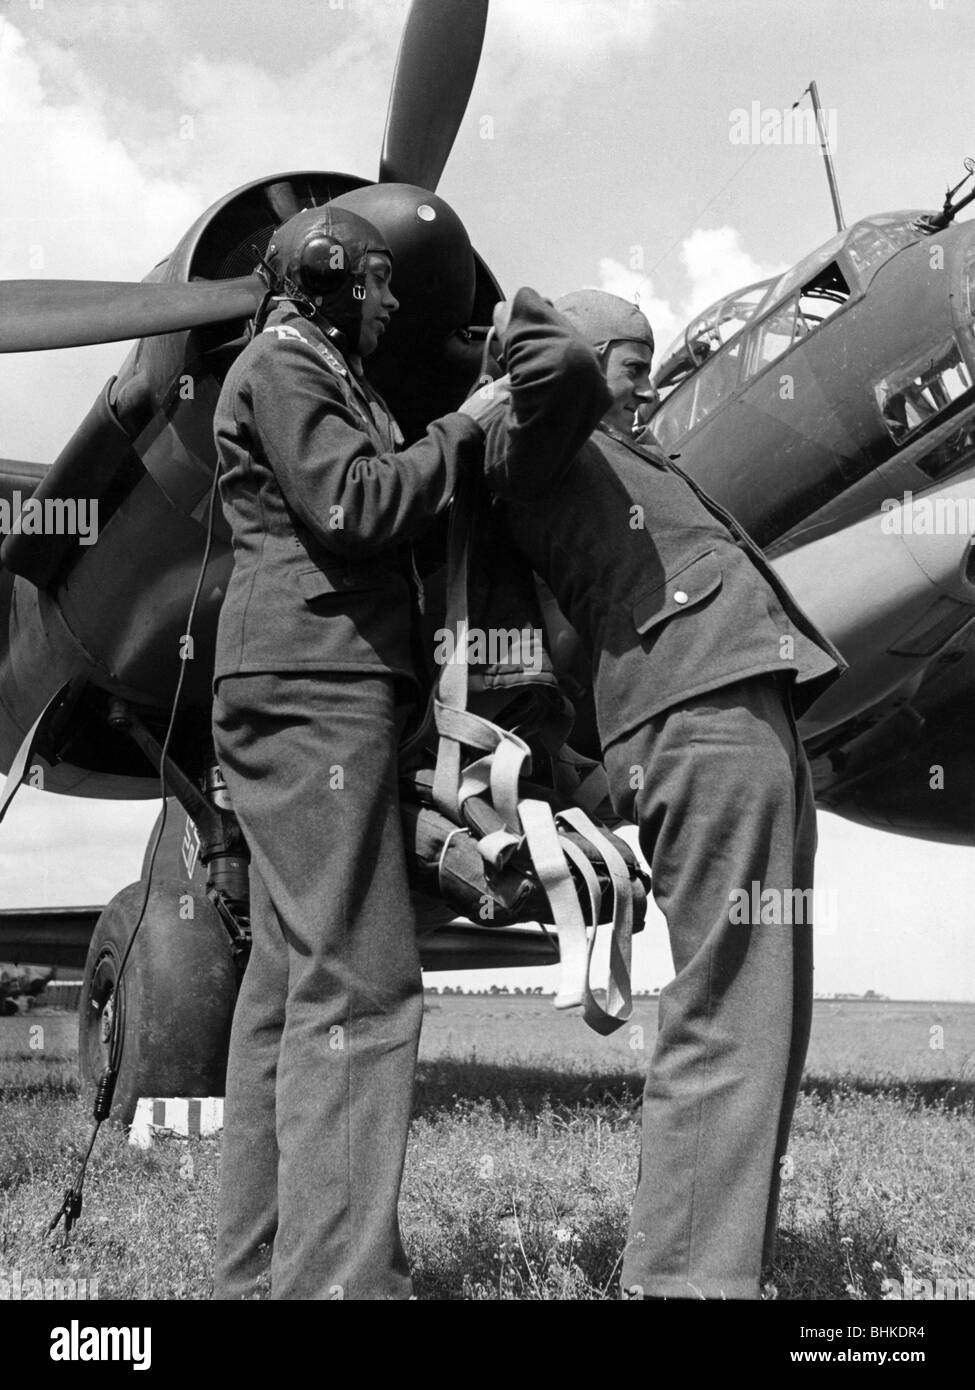 Événements, seconde Guerre mondiale / seconde Guerre mondiale, guerre aérienne, personnes, membres d'équipage d'un bombardier de taille moyenne allemand Ju 88 A 4 se préparant au décollage, vers 1942, Banque D'Images